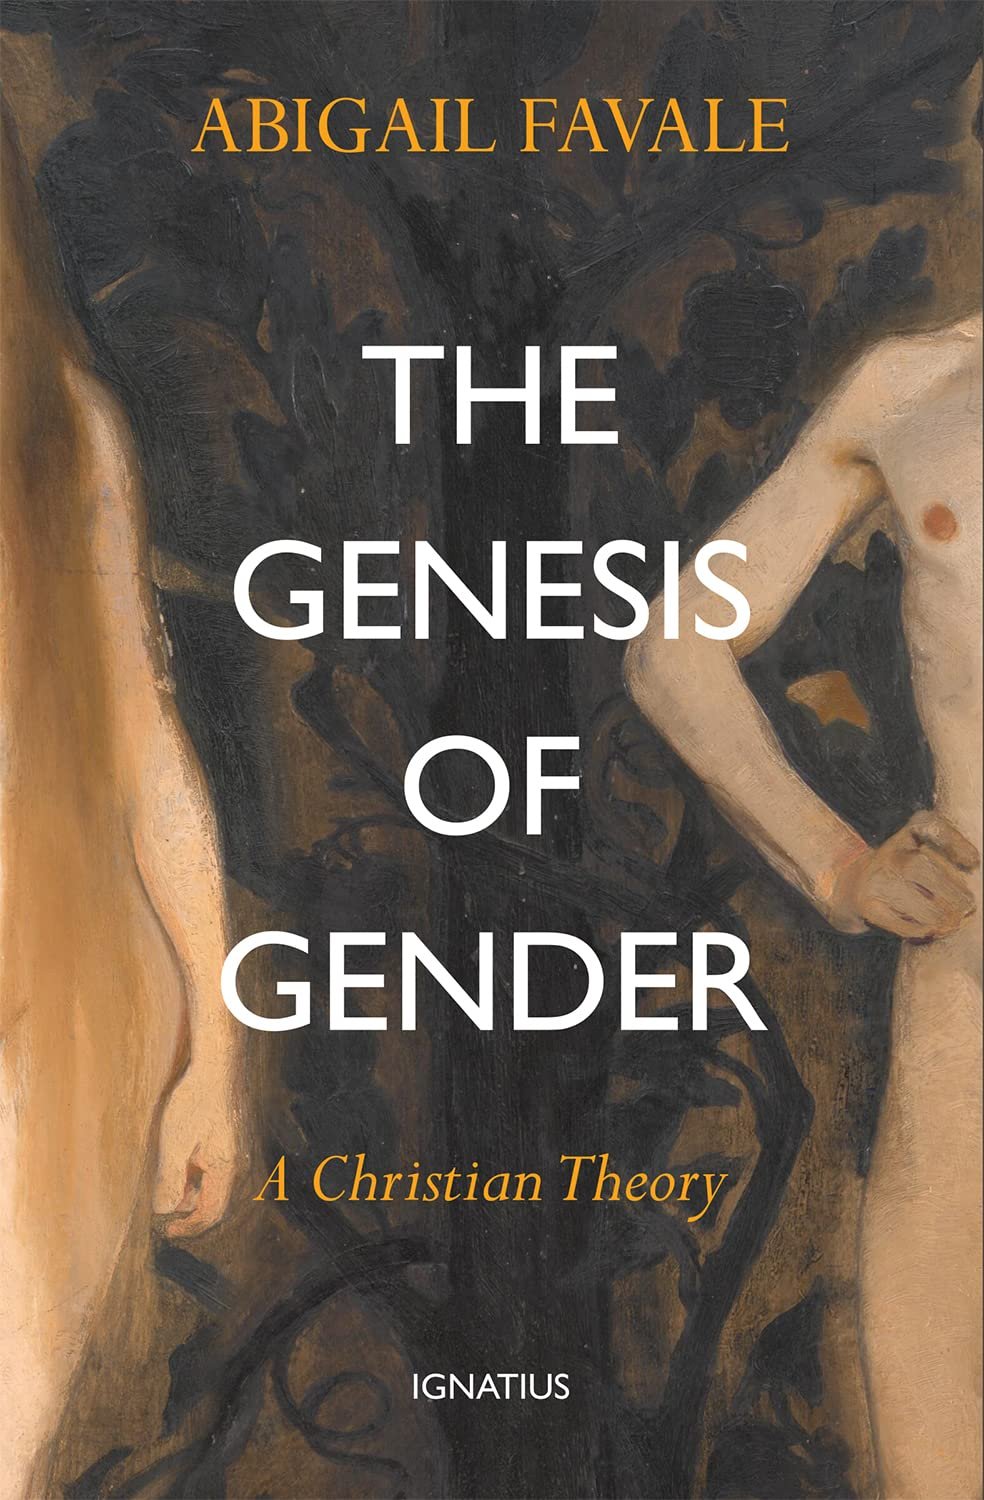 $10 - Genesis of Gender